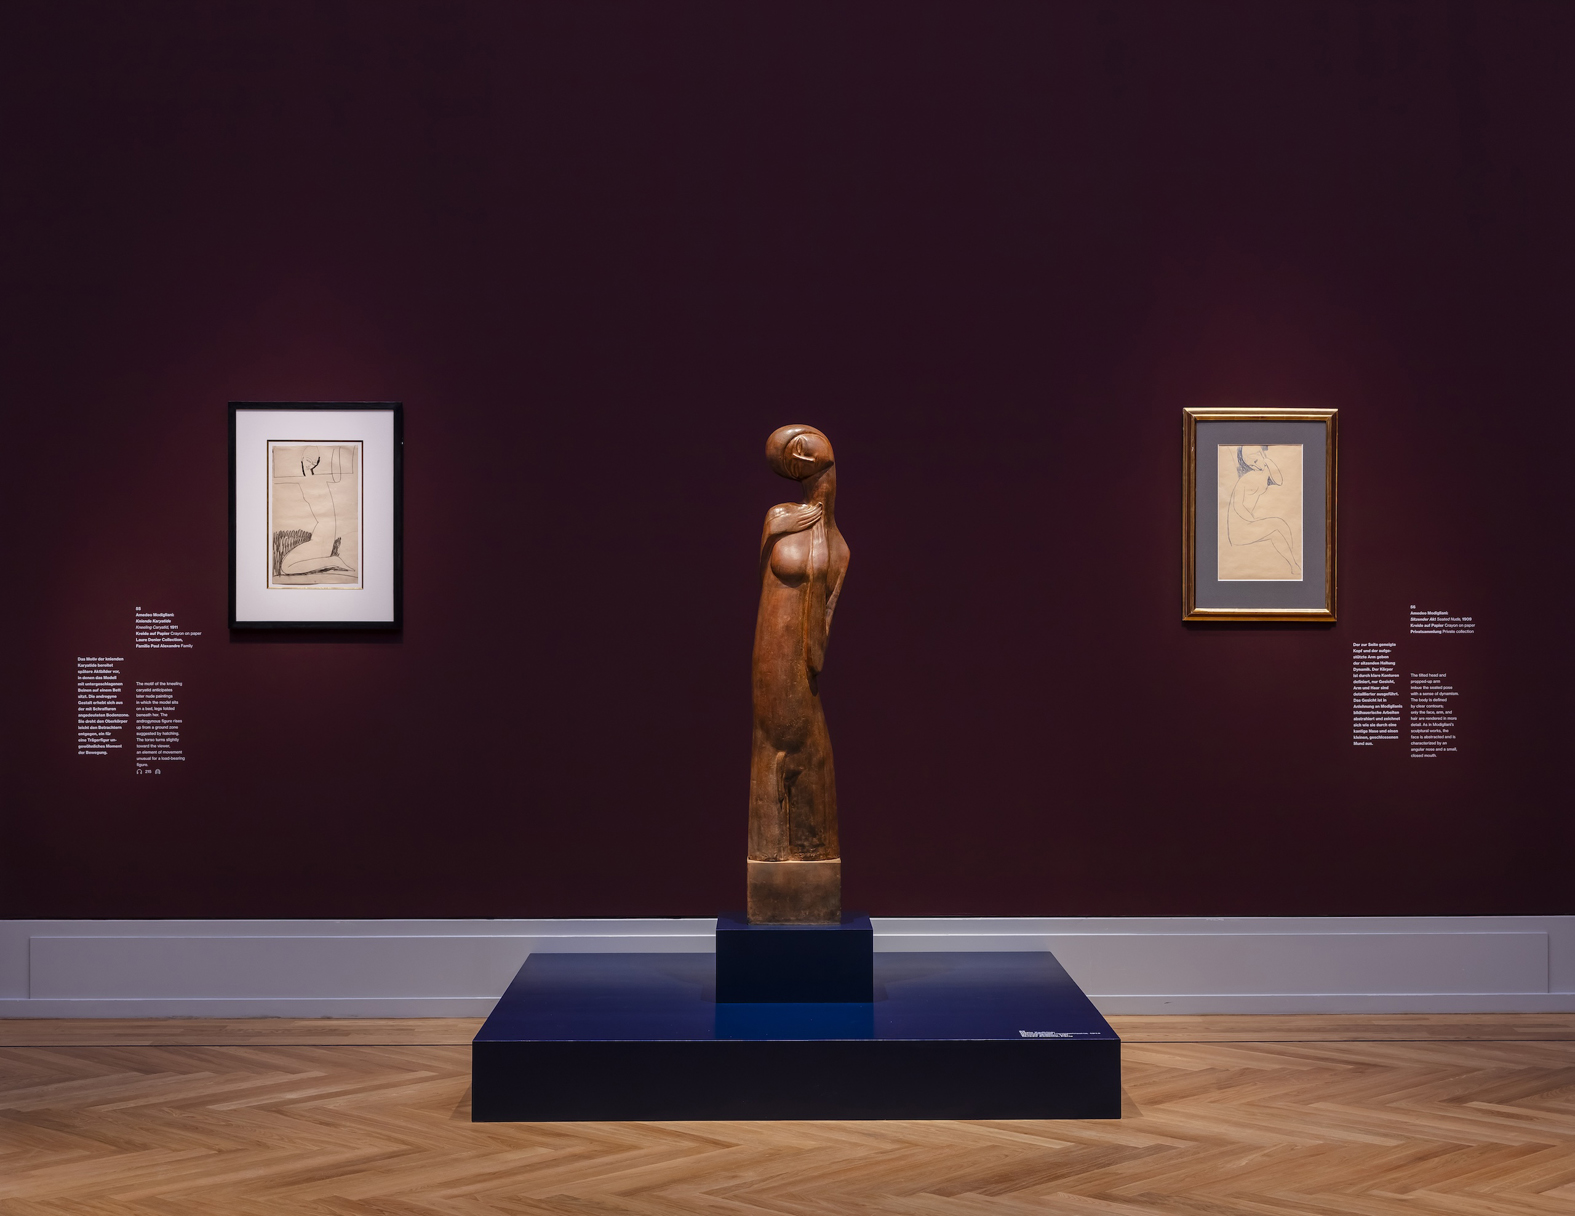 Hroničar narastajuće ženske samosvesti: "Modiljani. Moderni pogledi" u muzeju Barberini u Potsdamu 6